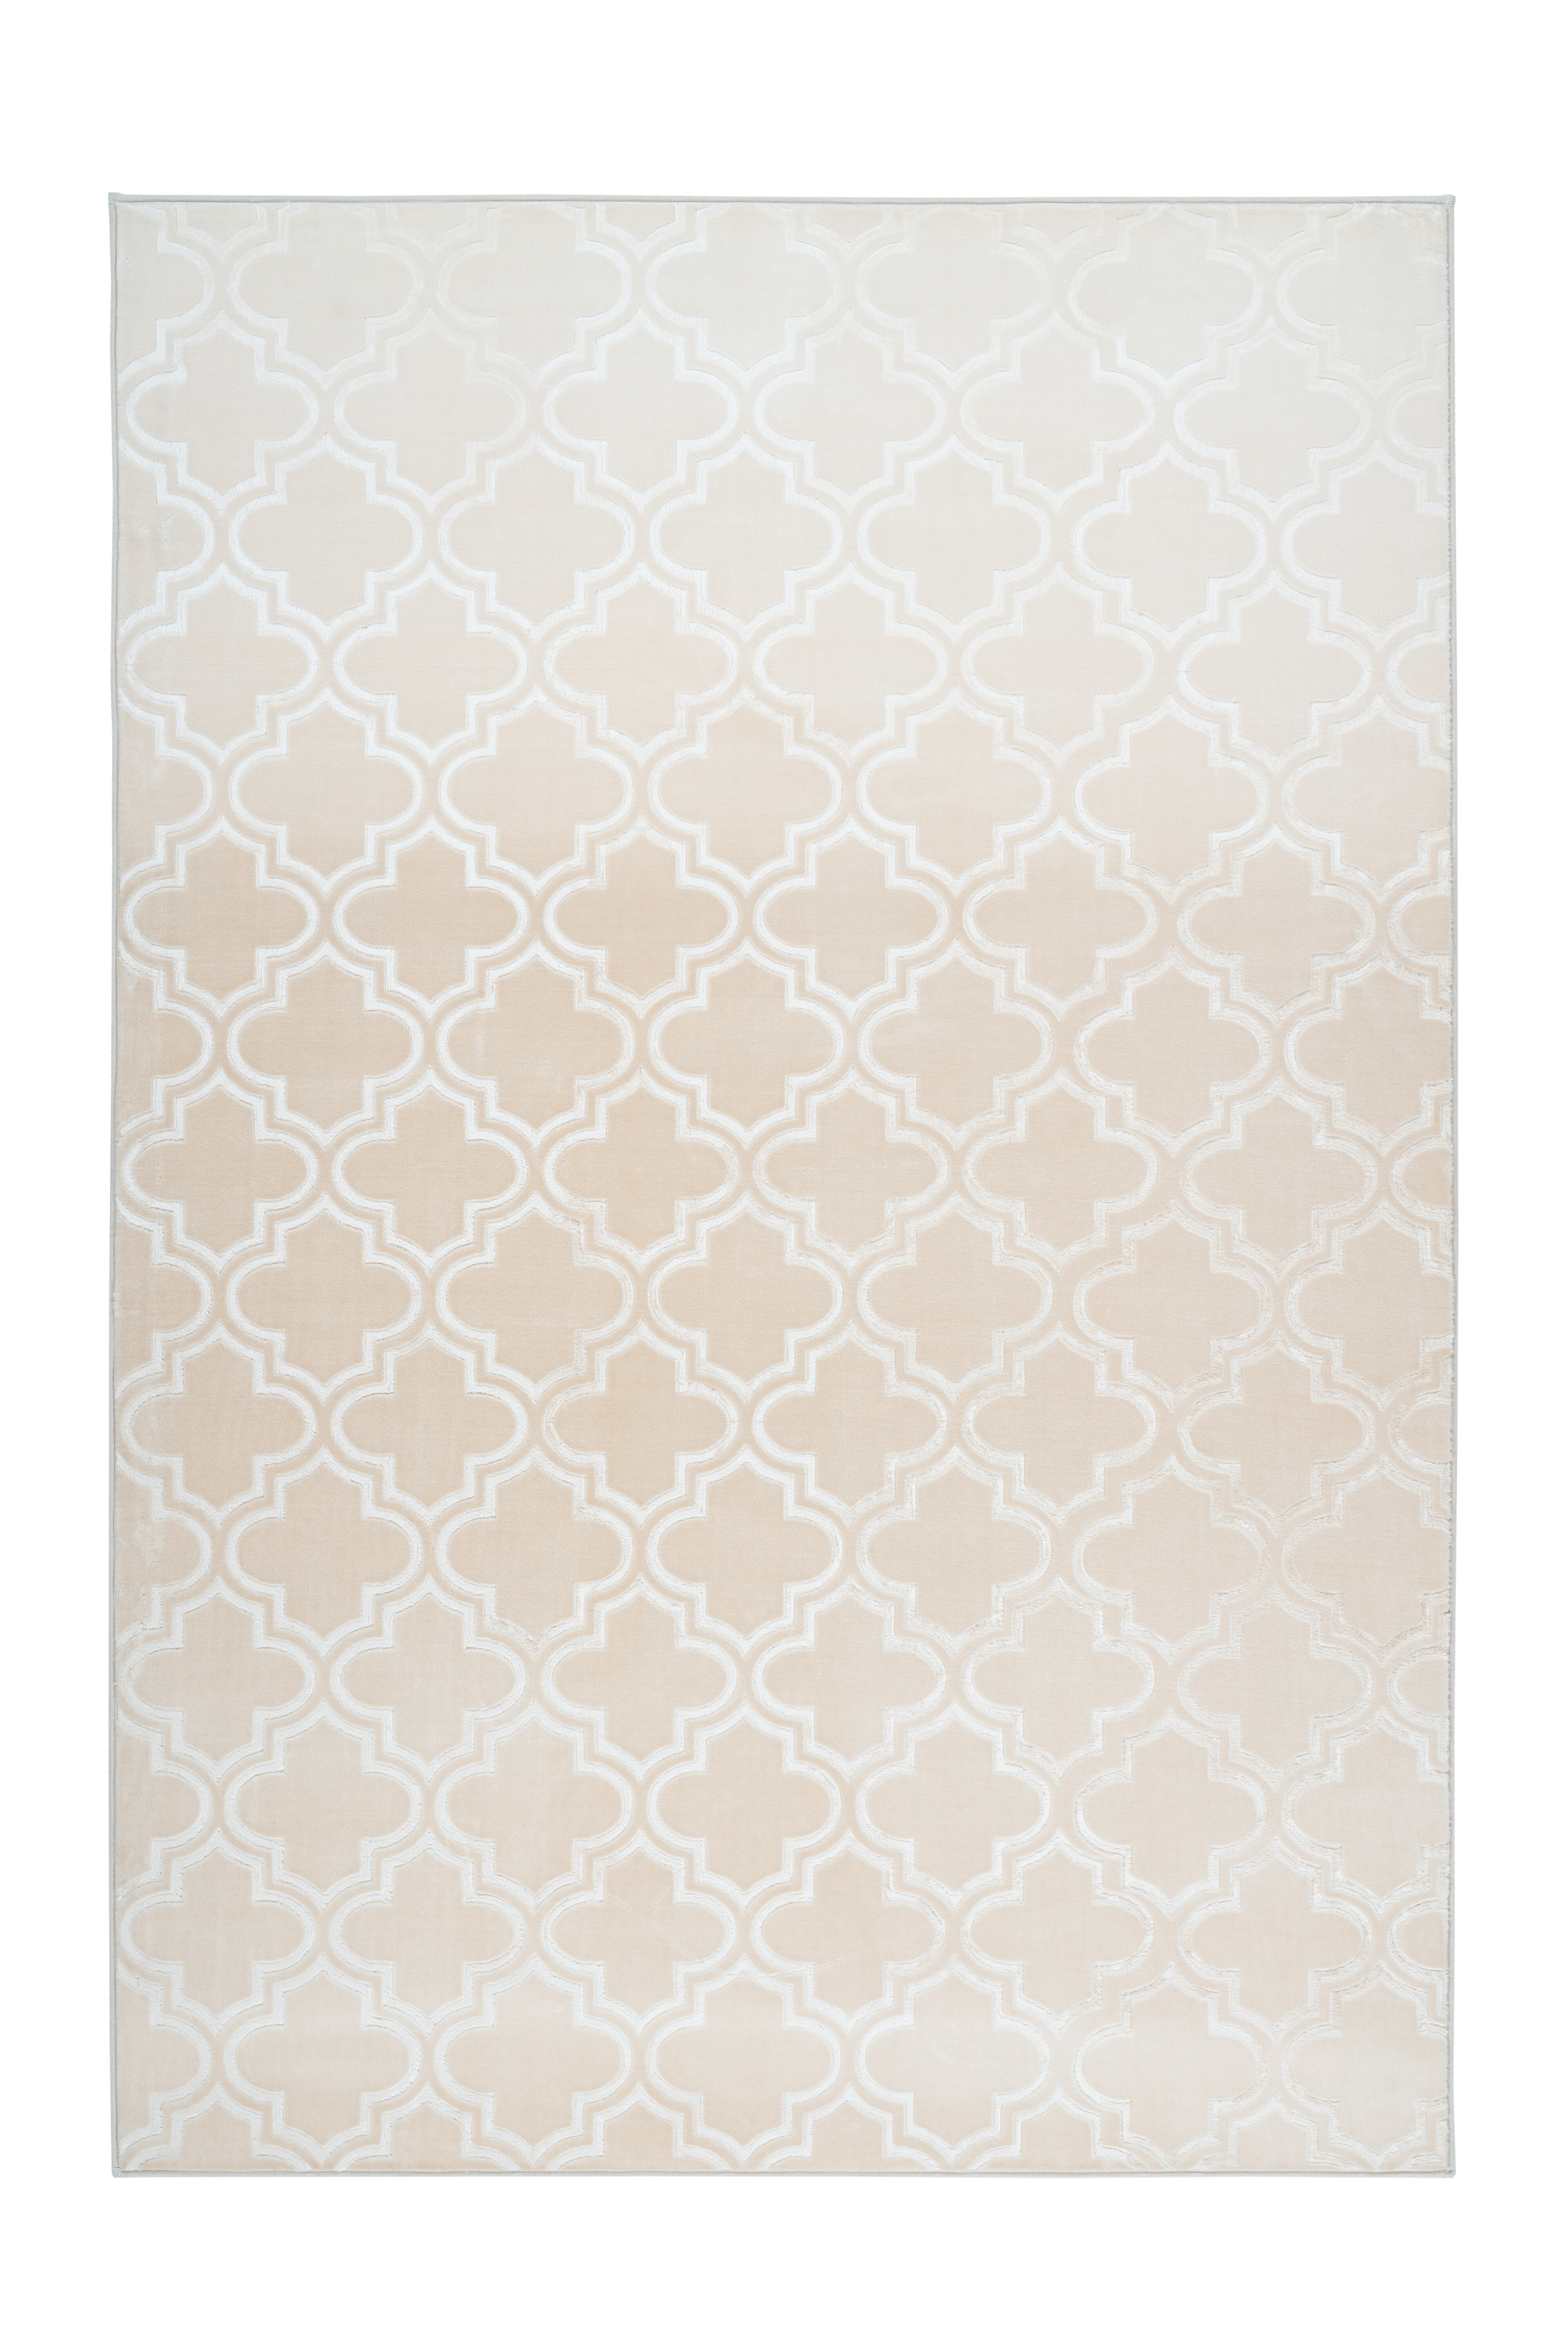 Kayoom Vloerkleed 'Monroe 100' kleur crème, 200 x 290cm